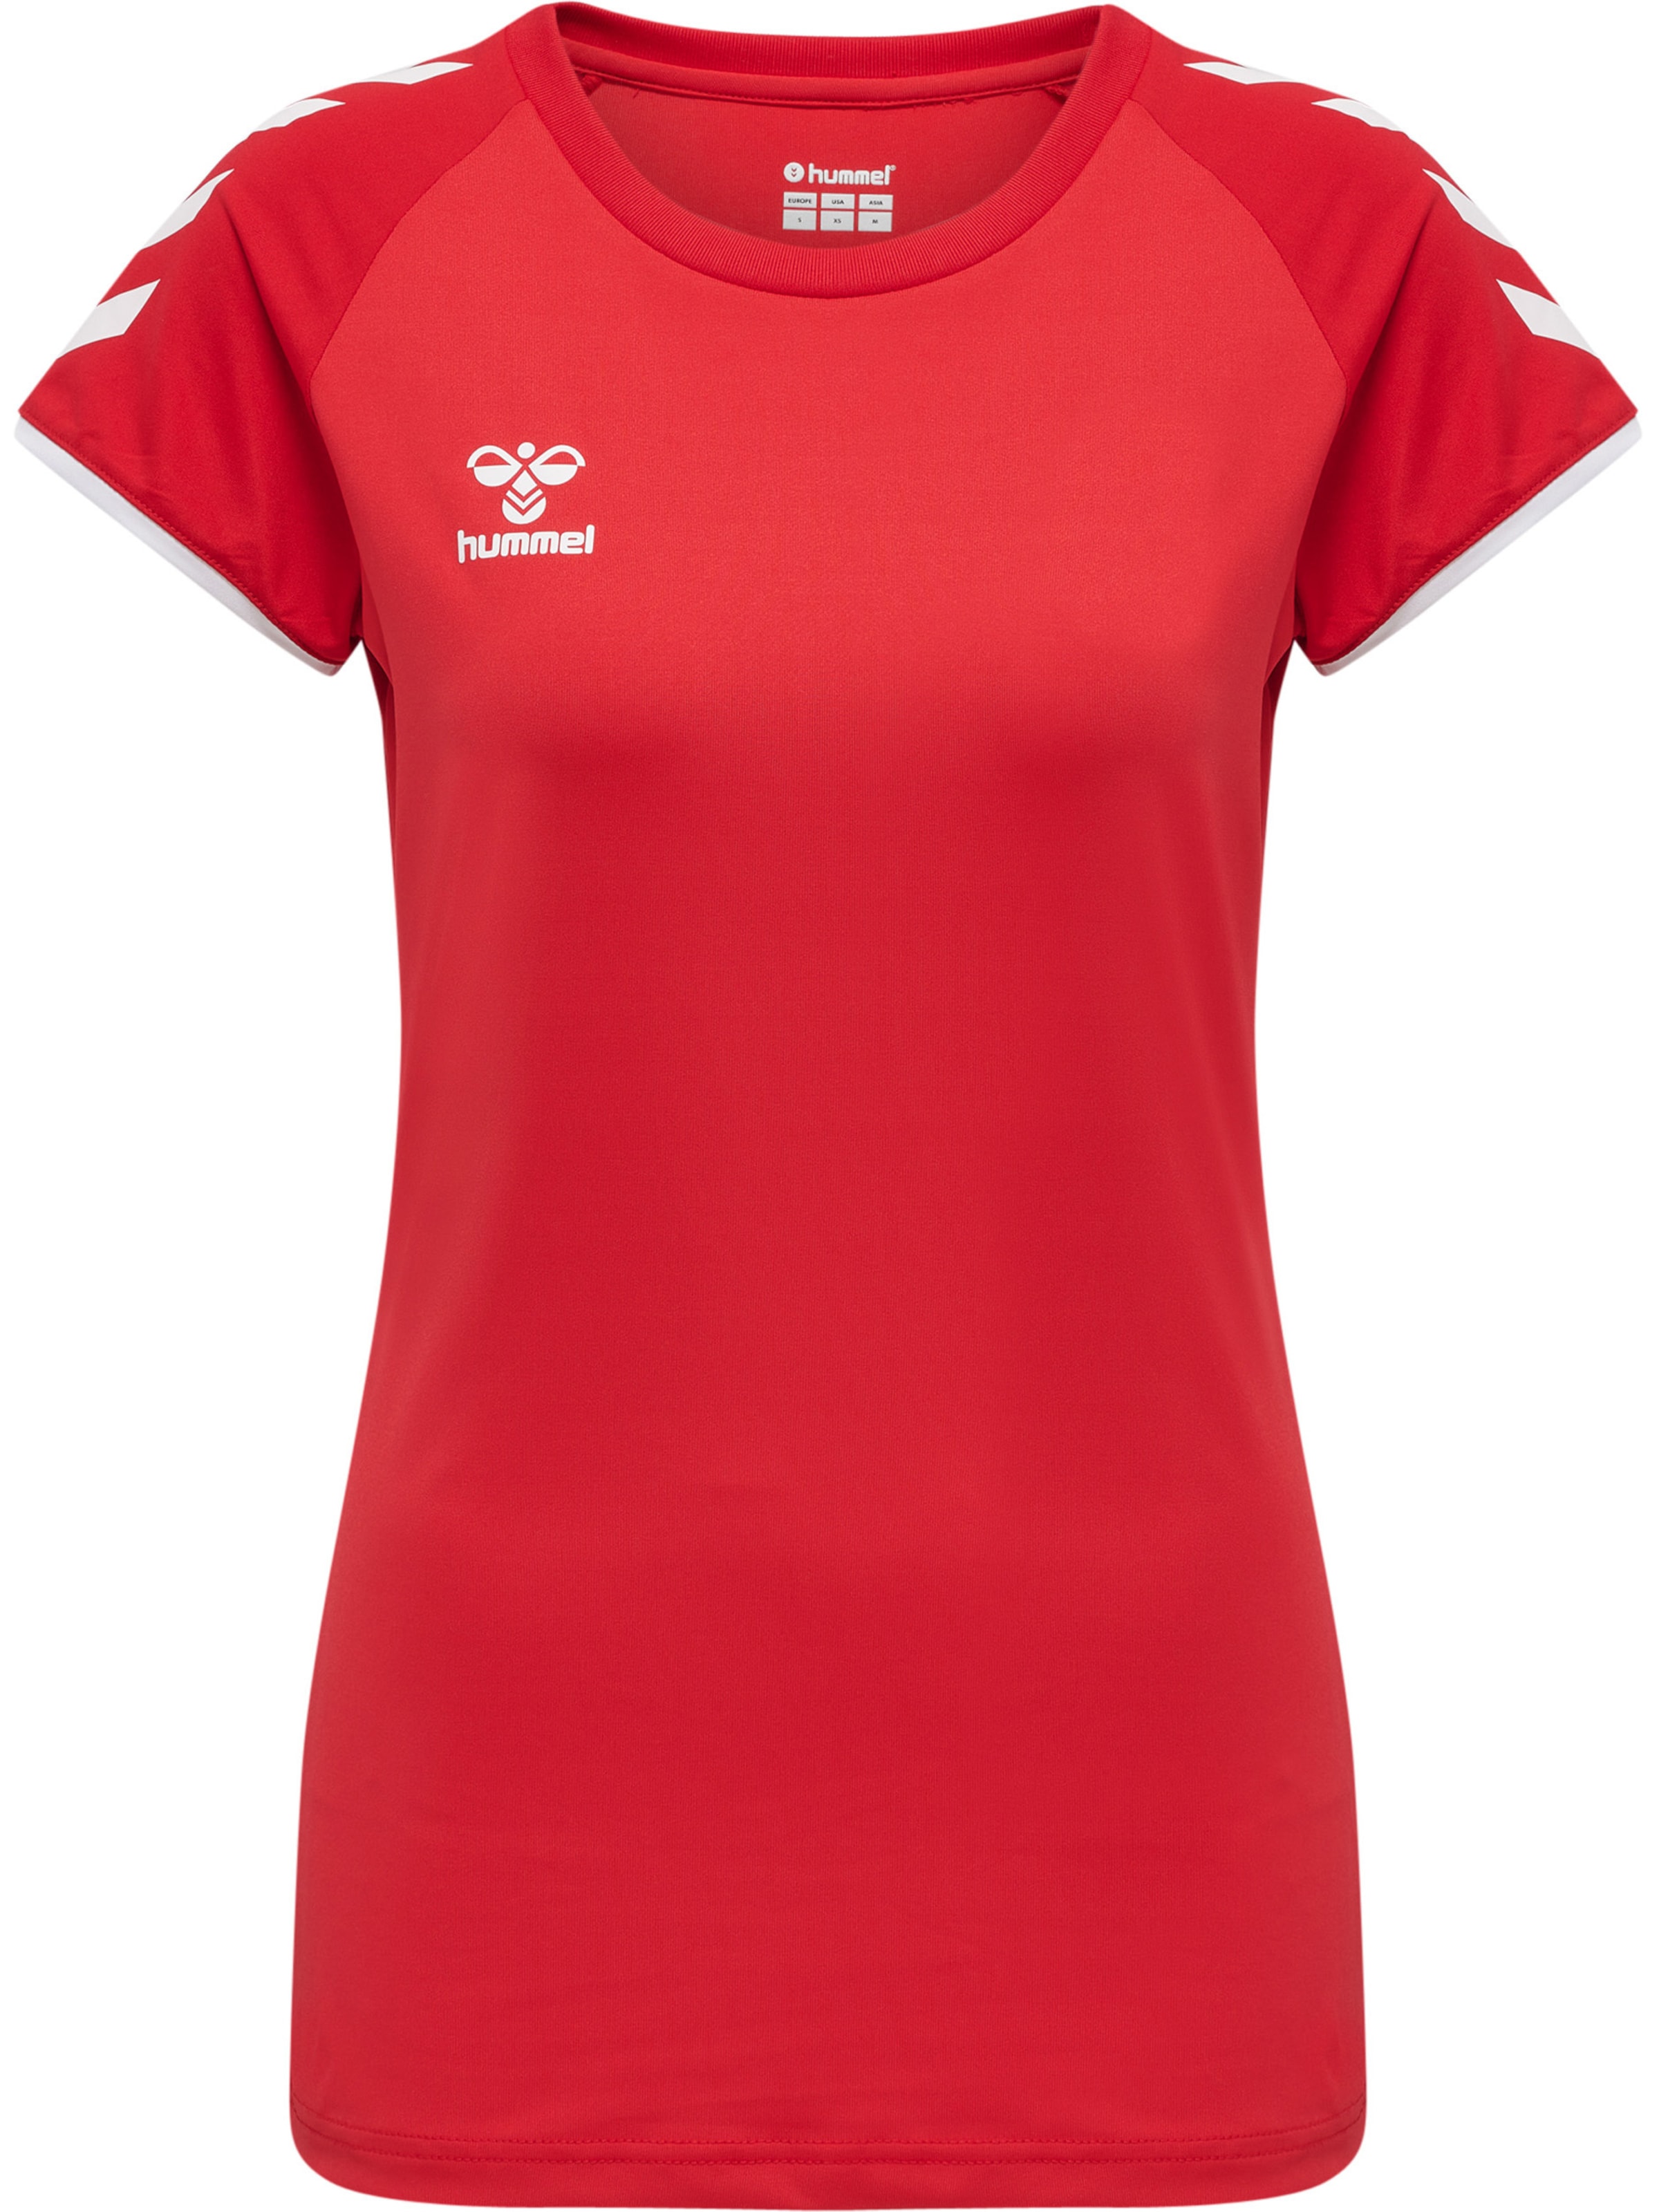 Frauen Shirts & Tops Hummel T-shirt in Rot - UK67525